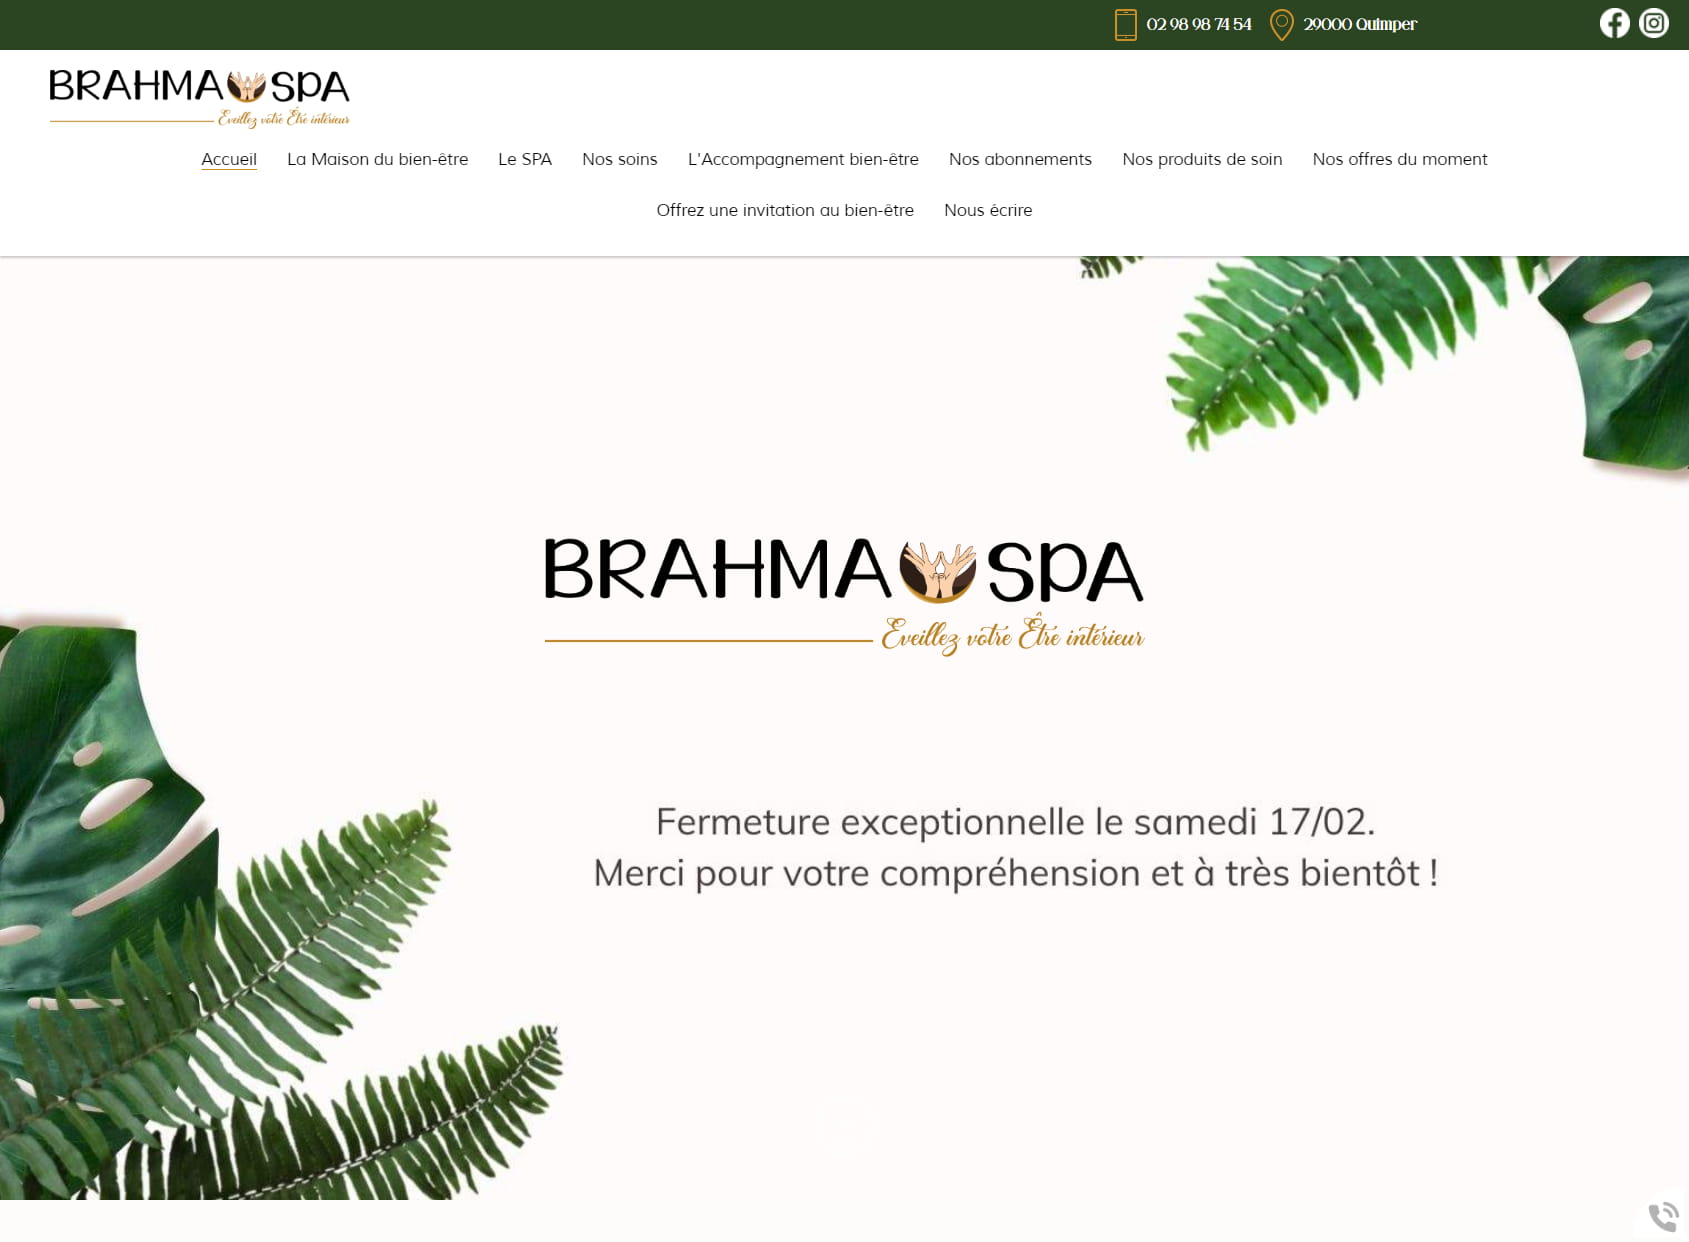 Brahma SPA | Massages traditionnels de bien-être | Jacuzzi & Hammam privatifs | Soins en duo